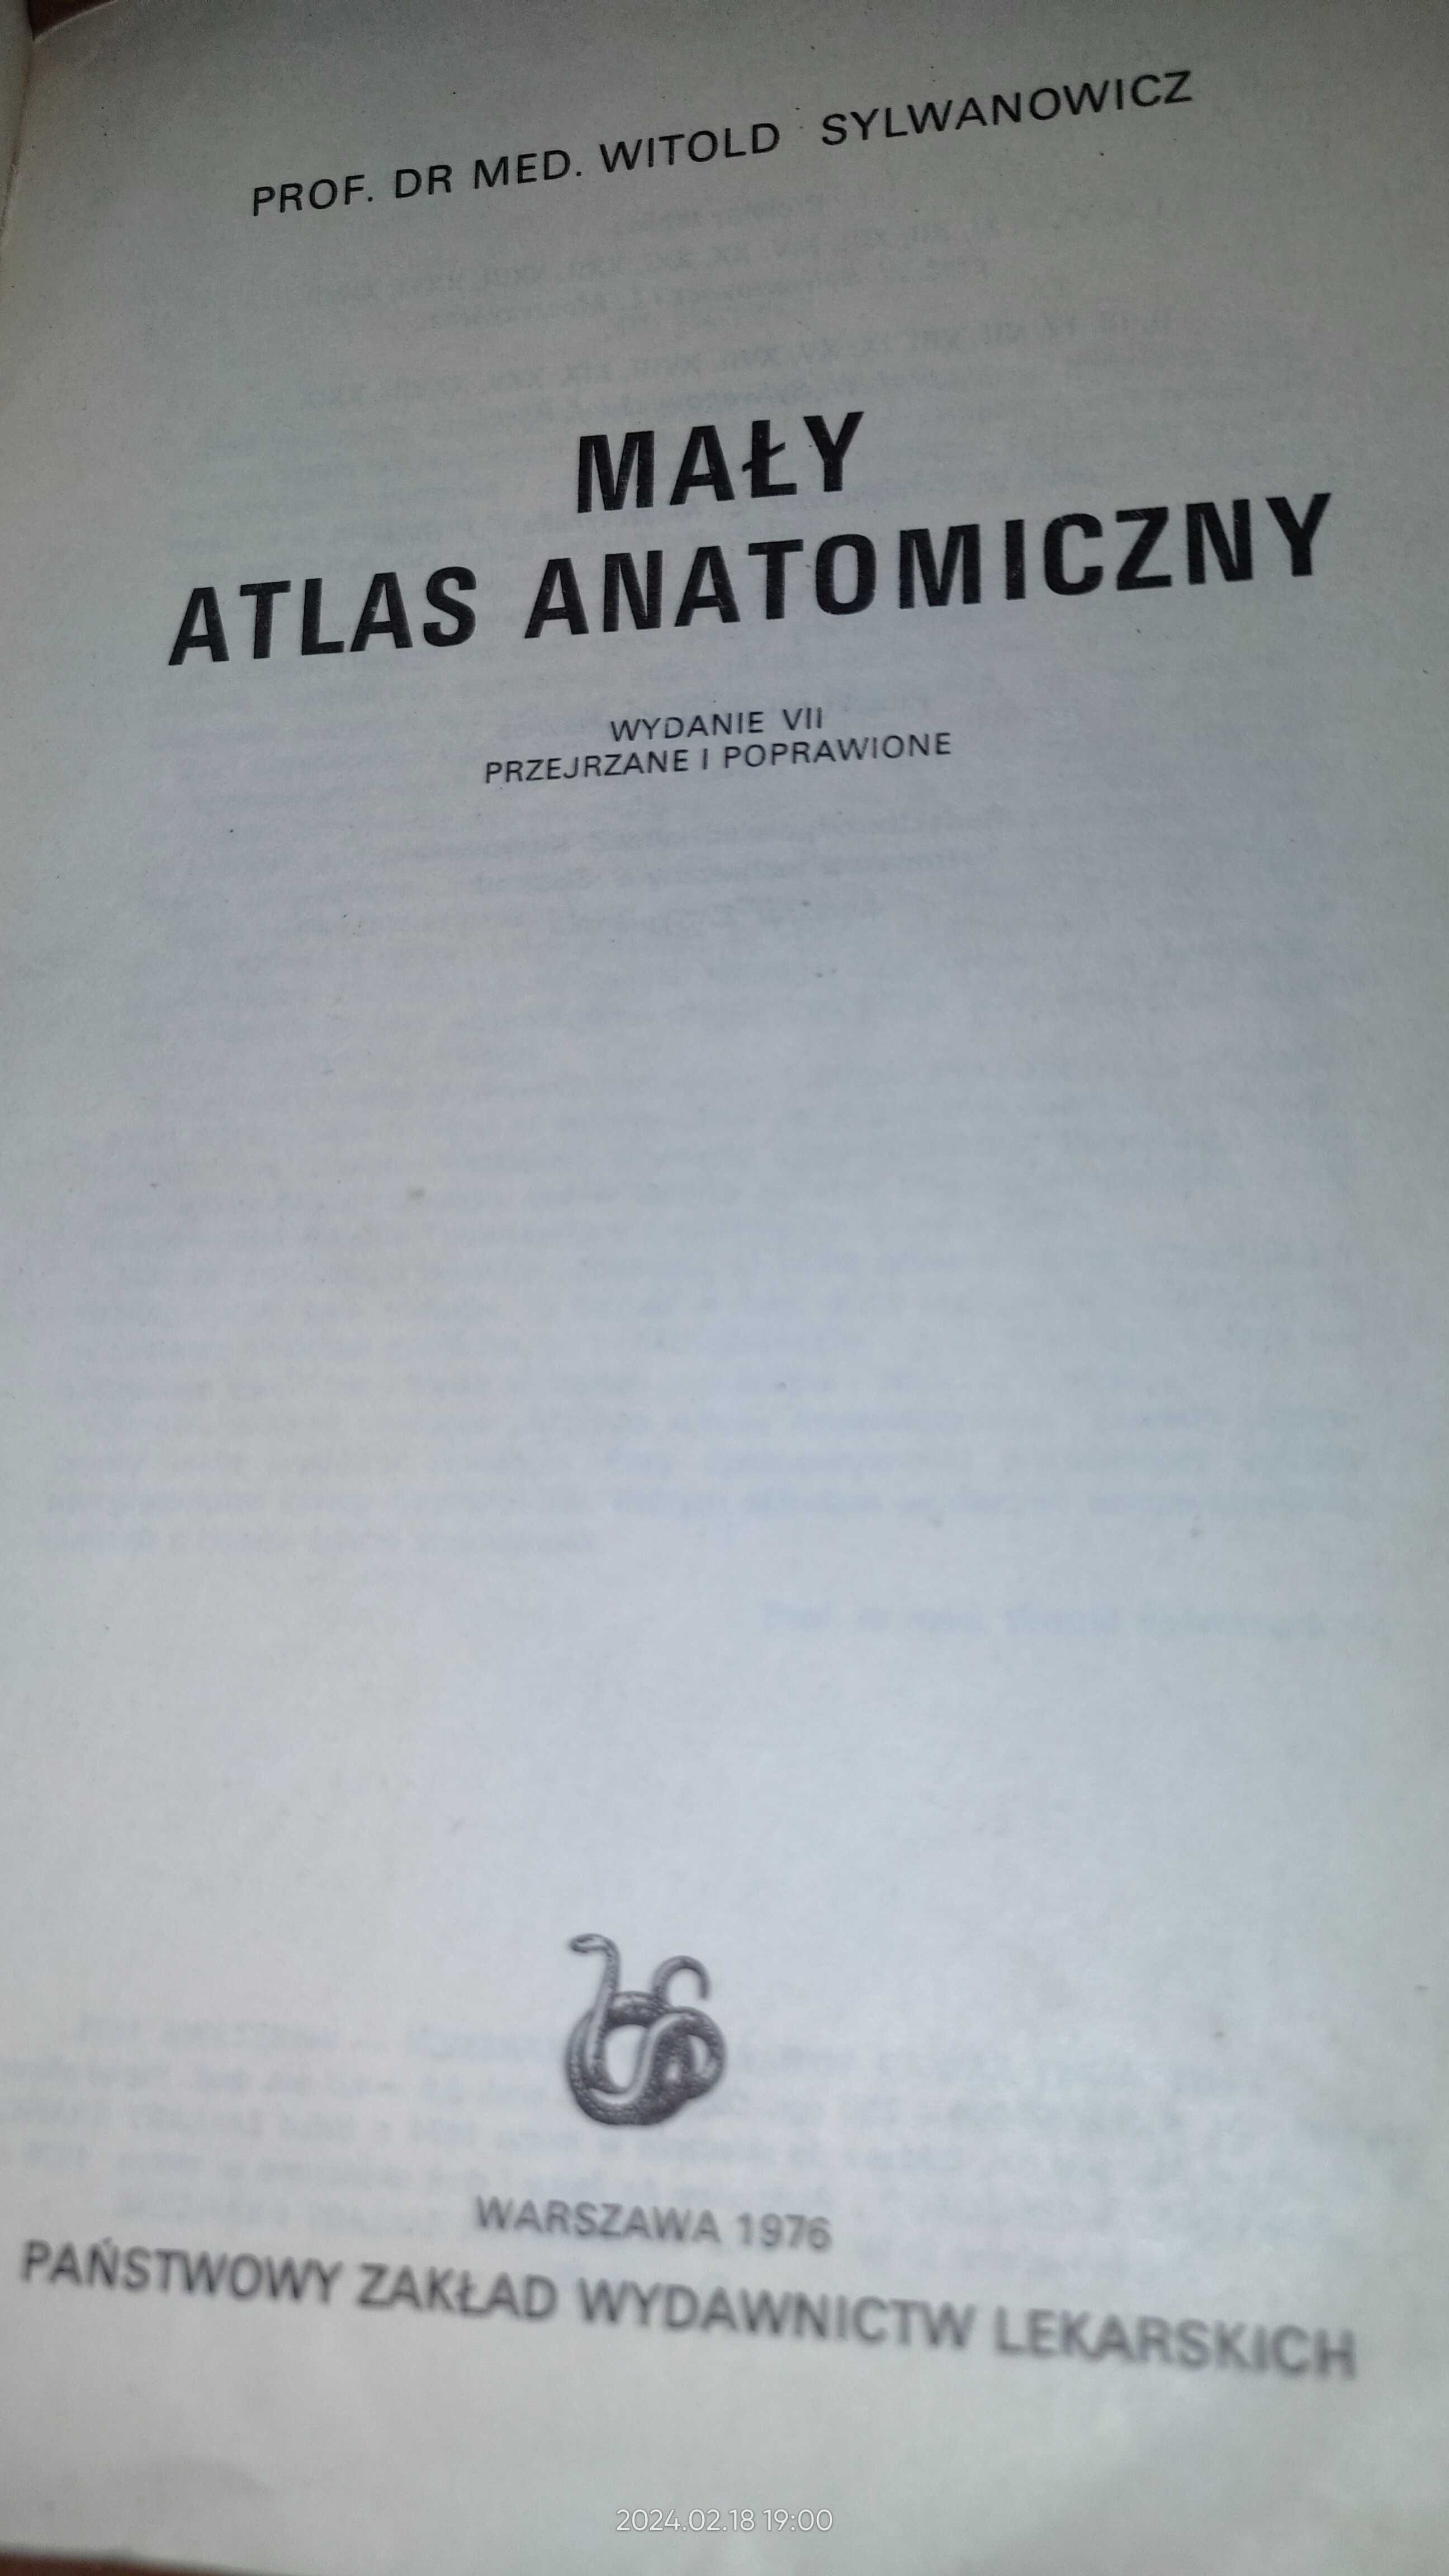 Maly atlas anatomiczny Prof. Witold Sylwanowicz